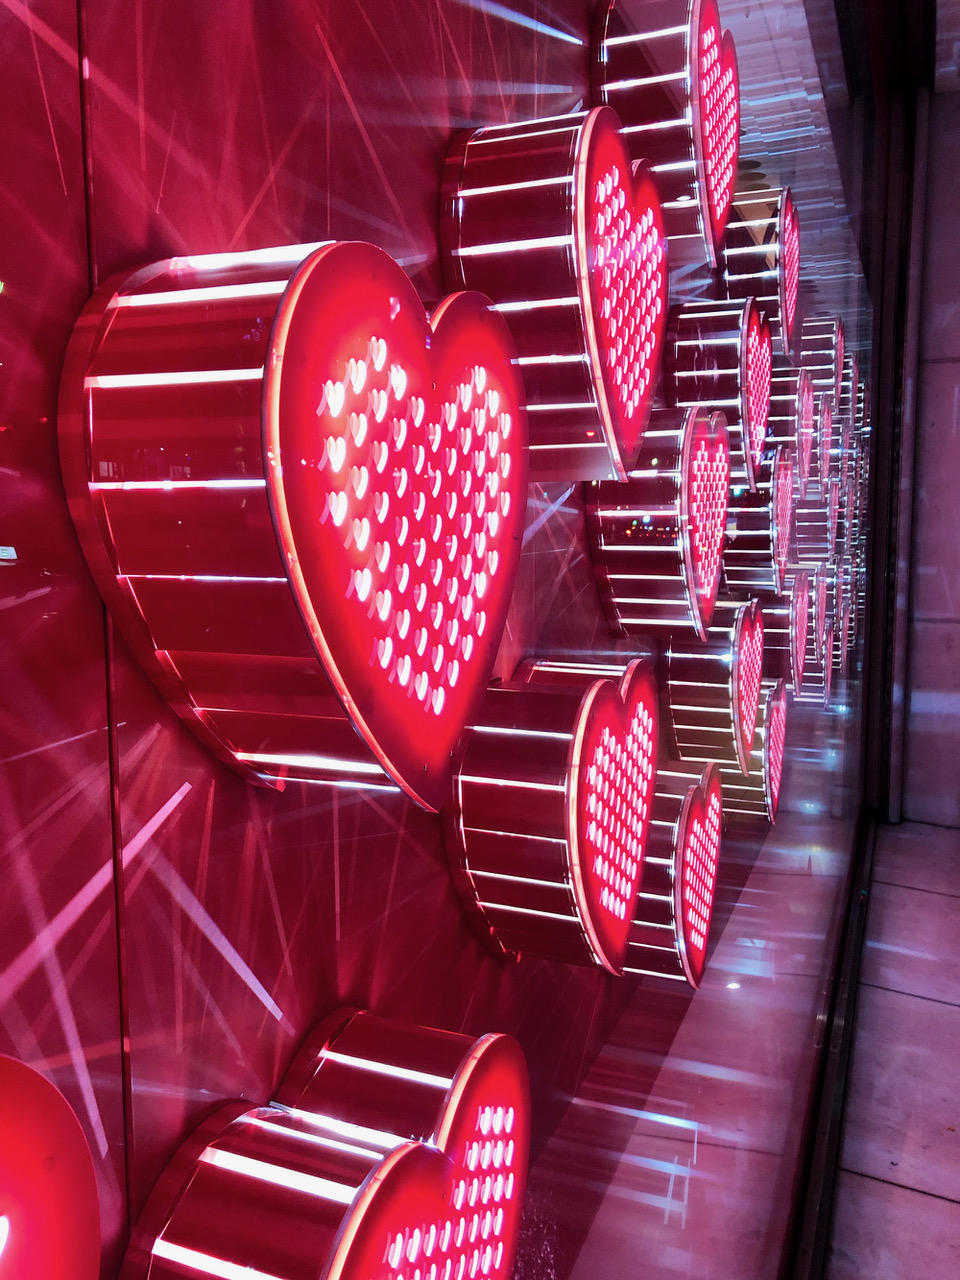 崇城大学デザイン学科の学生が鶴屋百貨店のバレンタインディスプレイをプロデュース -- テーマは「ことしはわたしのバレンタイン」